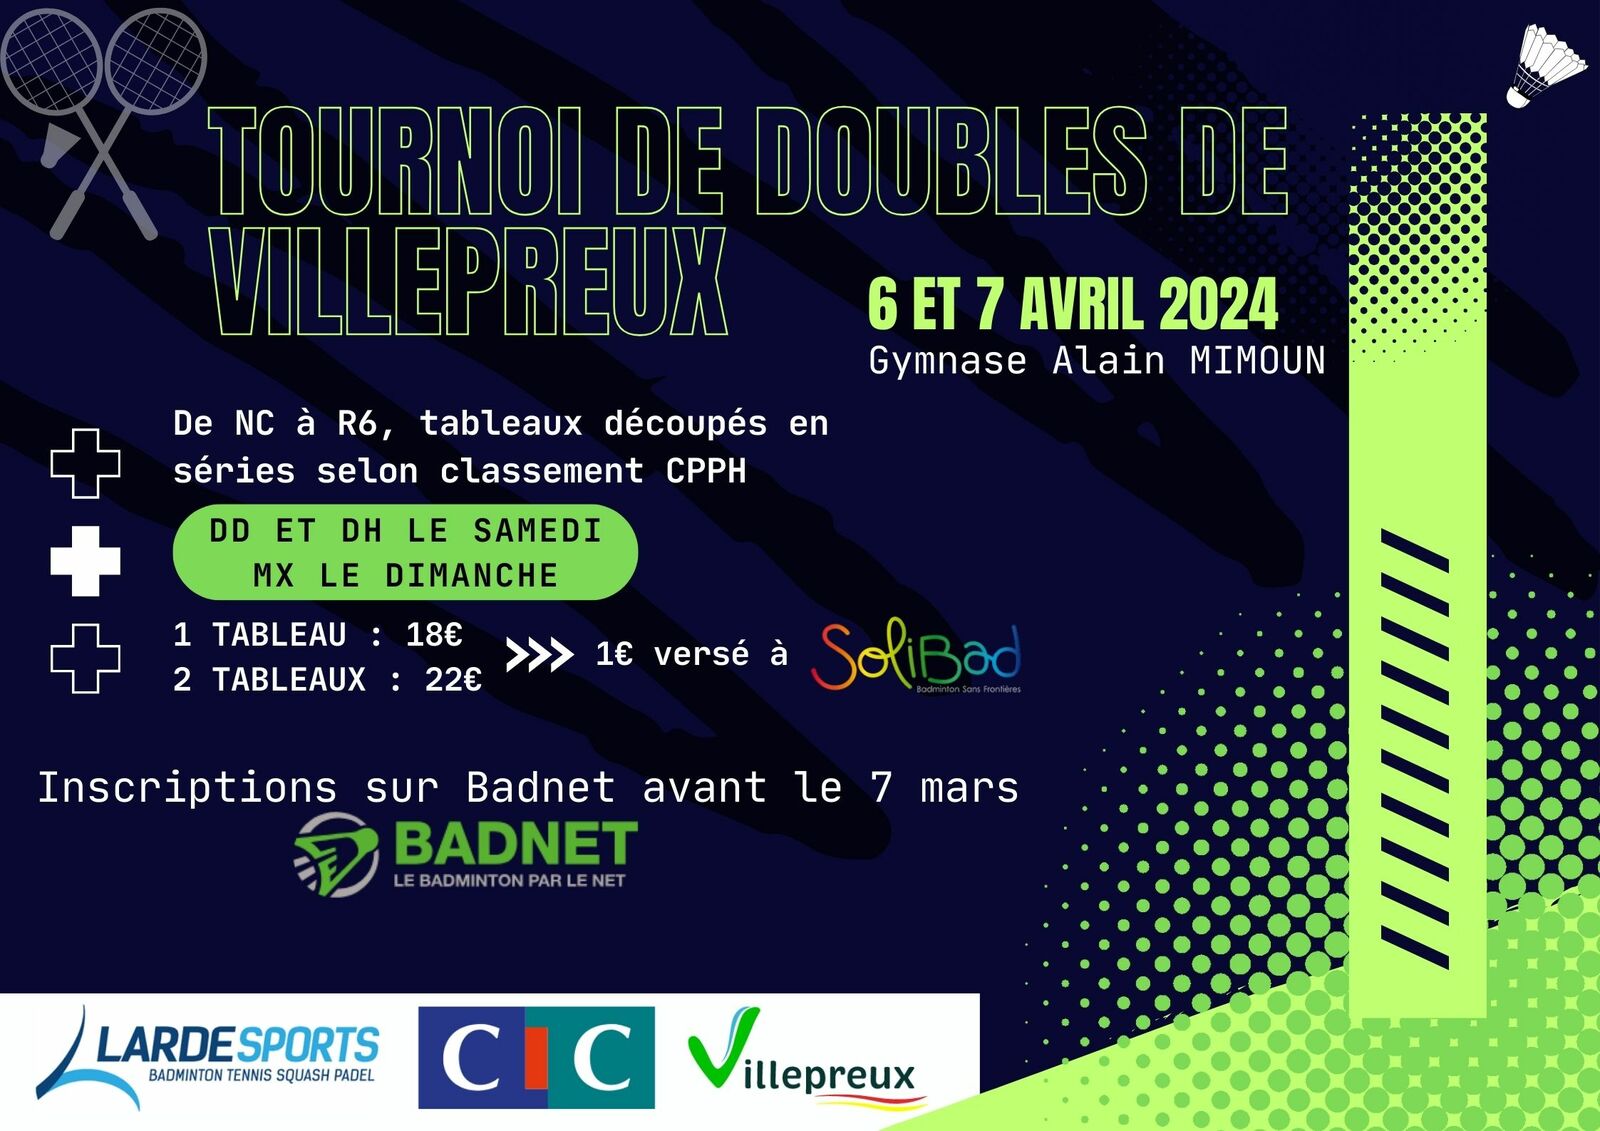 Tournoi de doubles de Villepreux 6 et 7 avril 2024